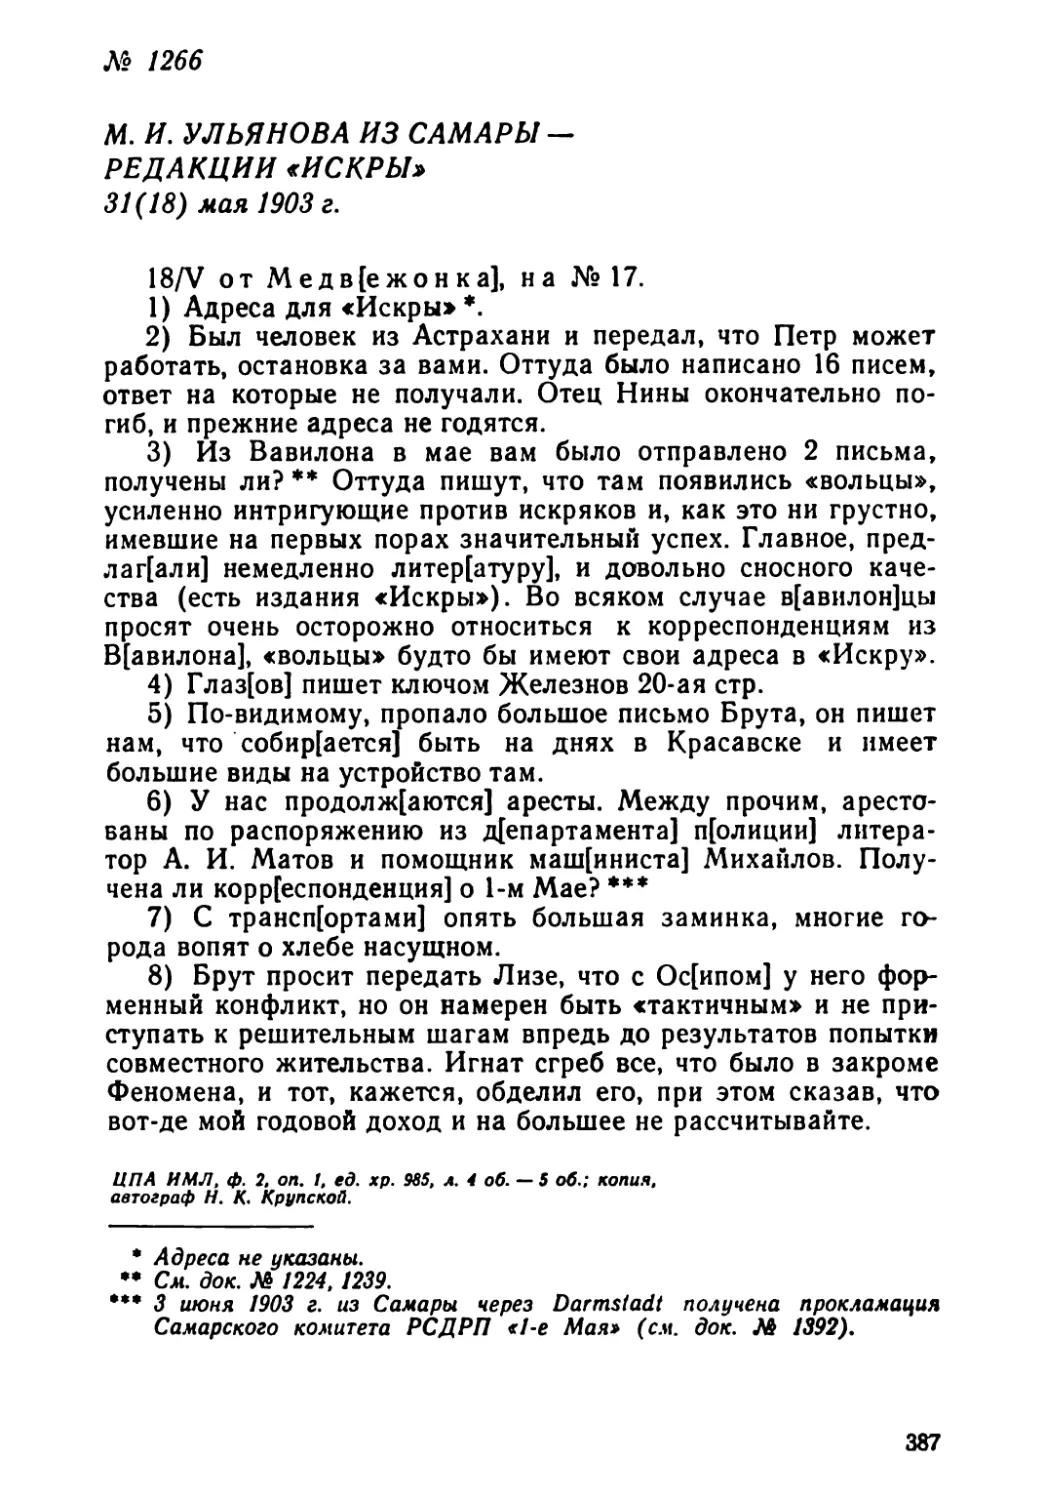 № 1266 М. И. Ульянова из Самары — редакции «Искры». 31 мая